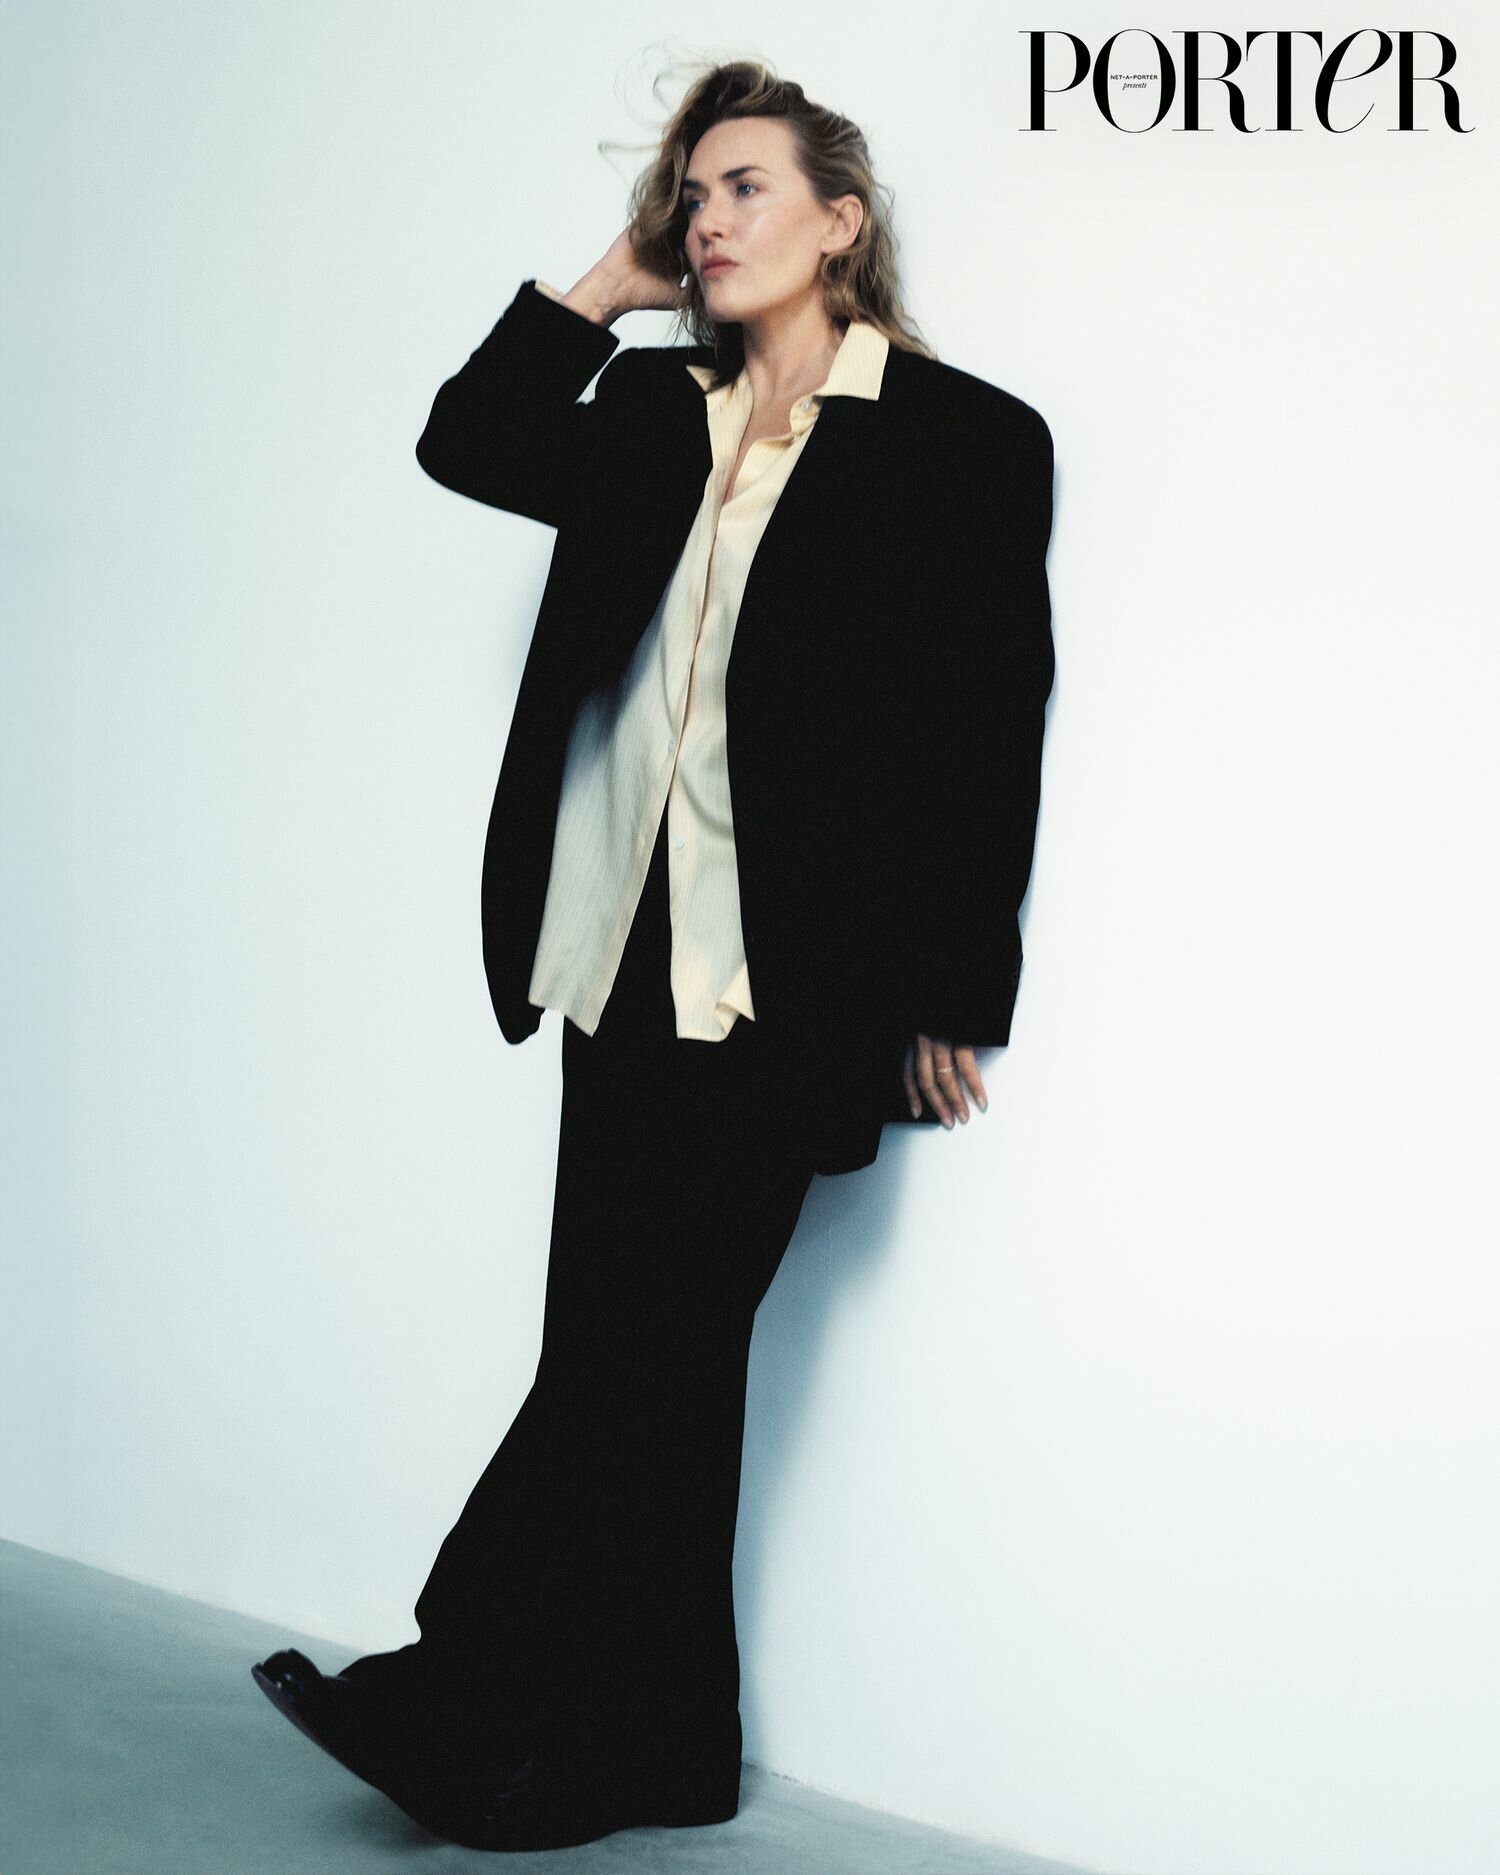 Kate Winslet for Porter